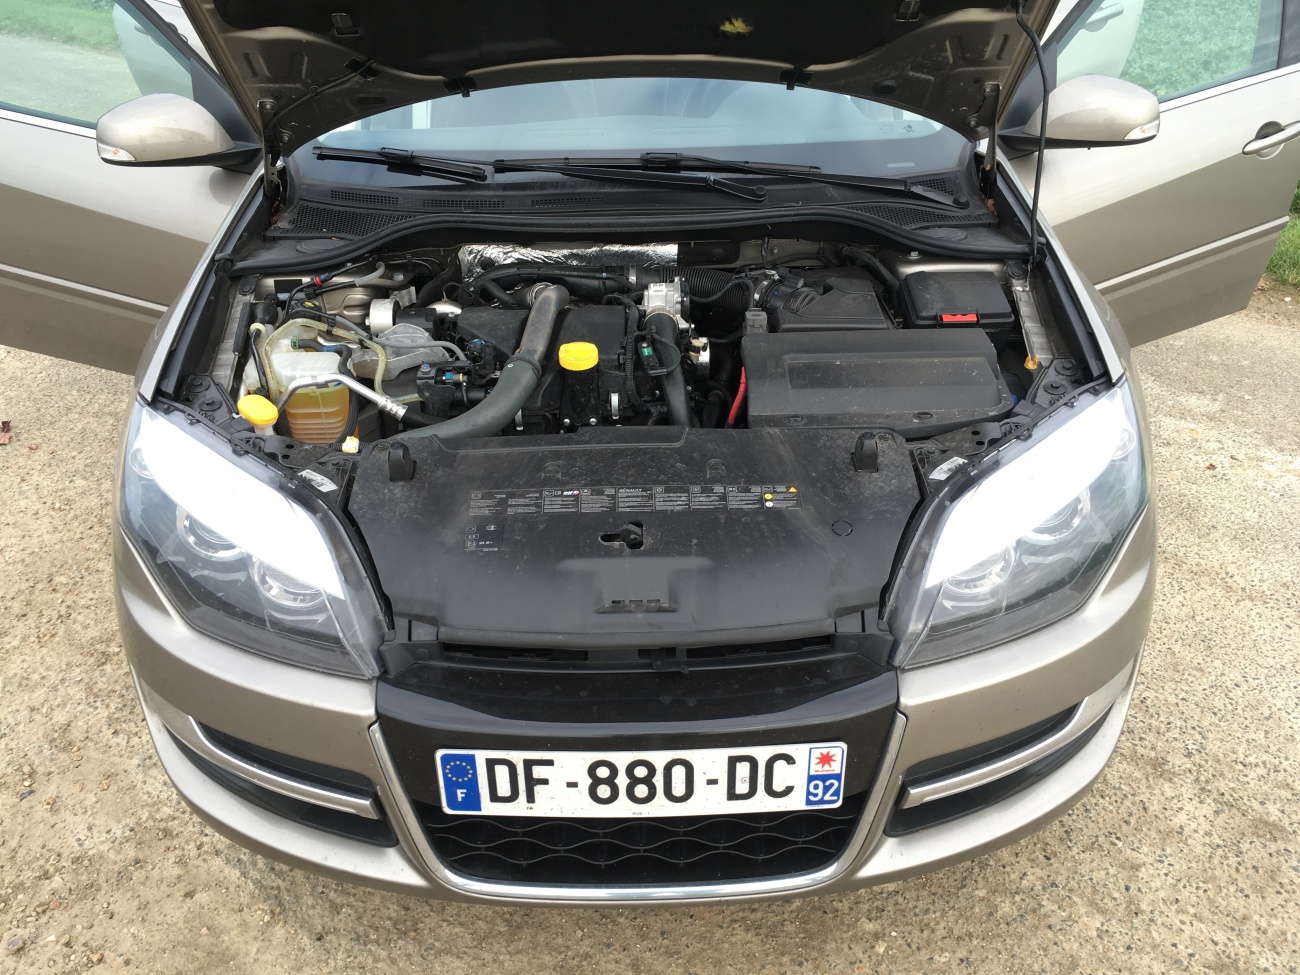 Essai Renault Laguna (2015) : faut-il encore acheter une Laguna 3 ?